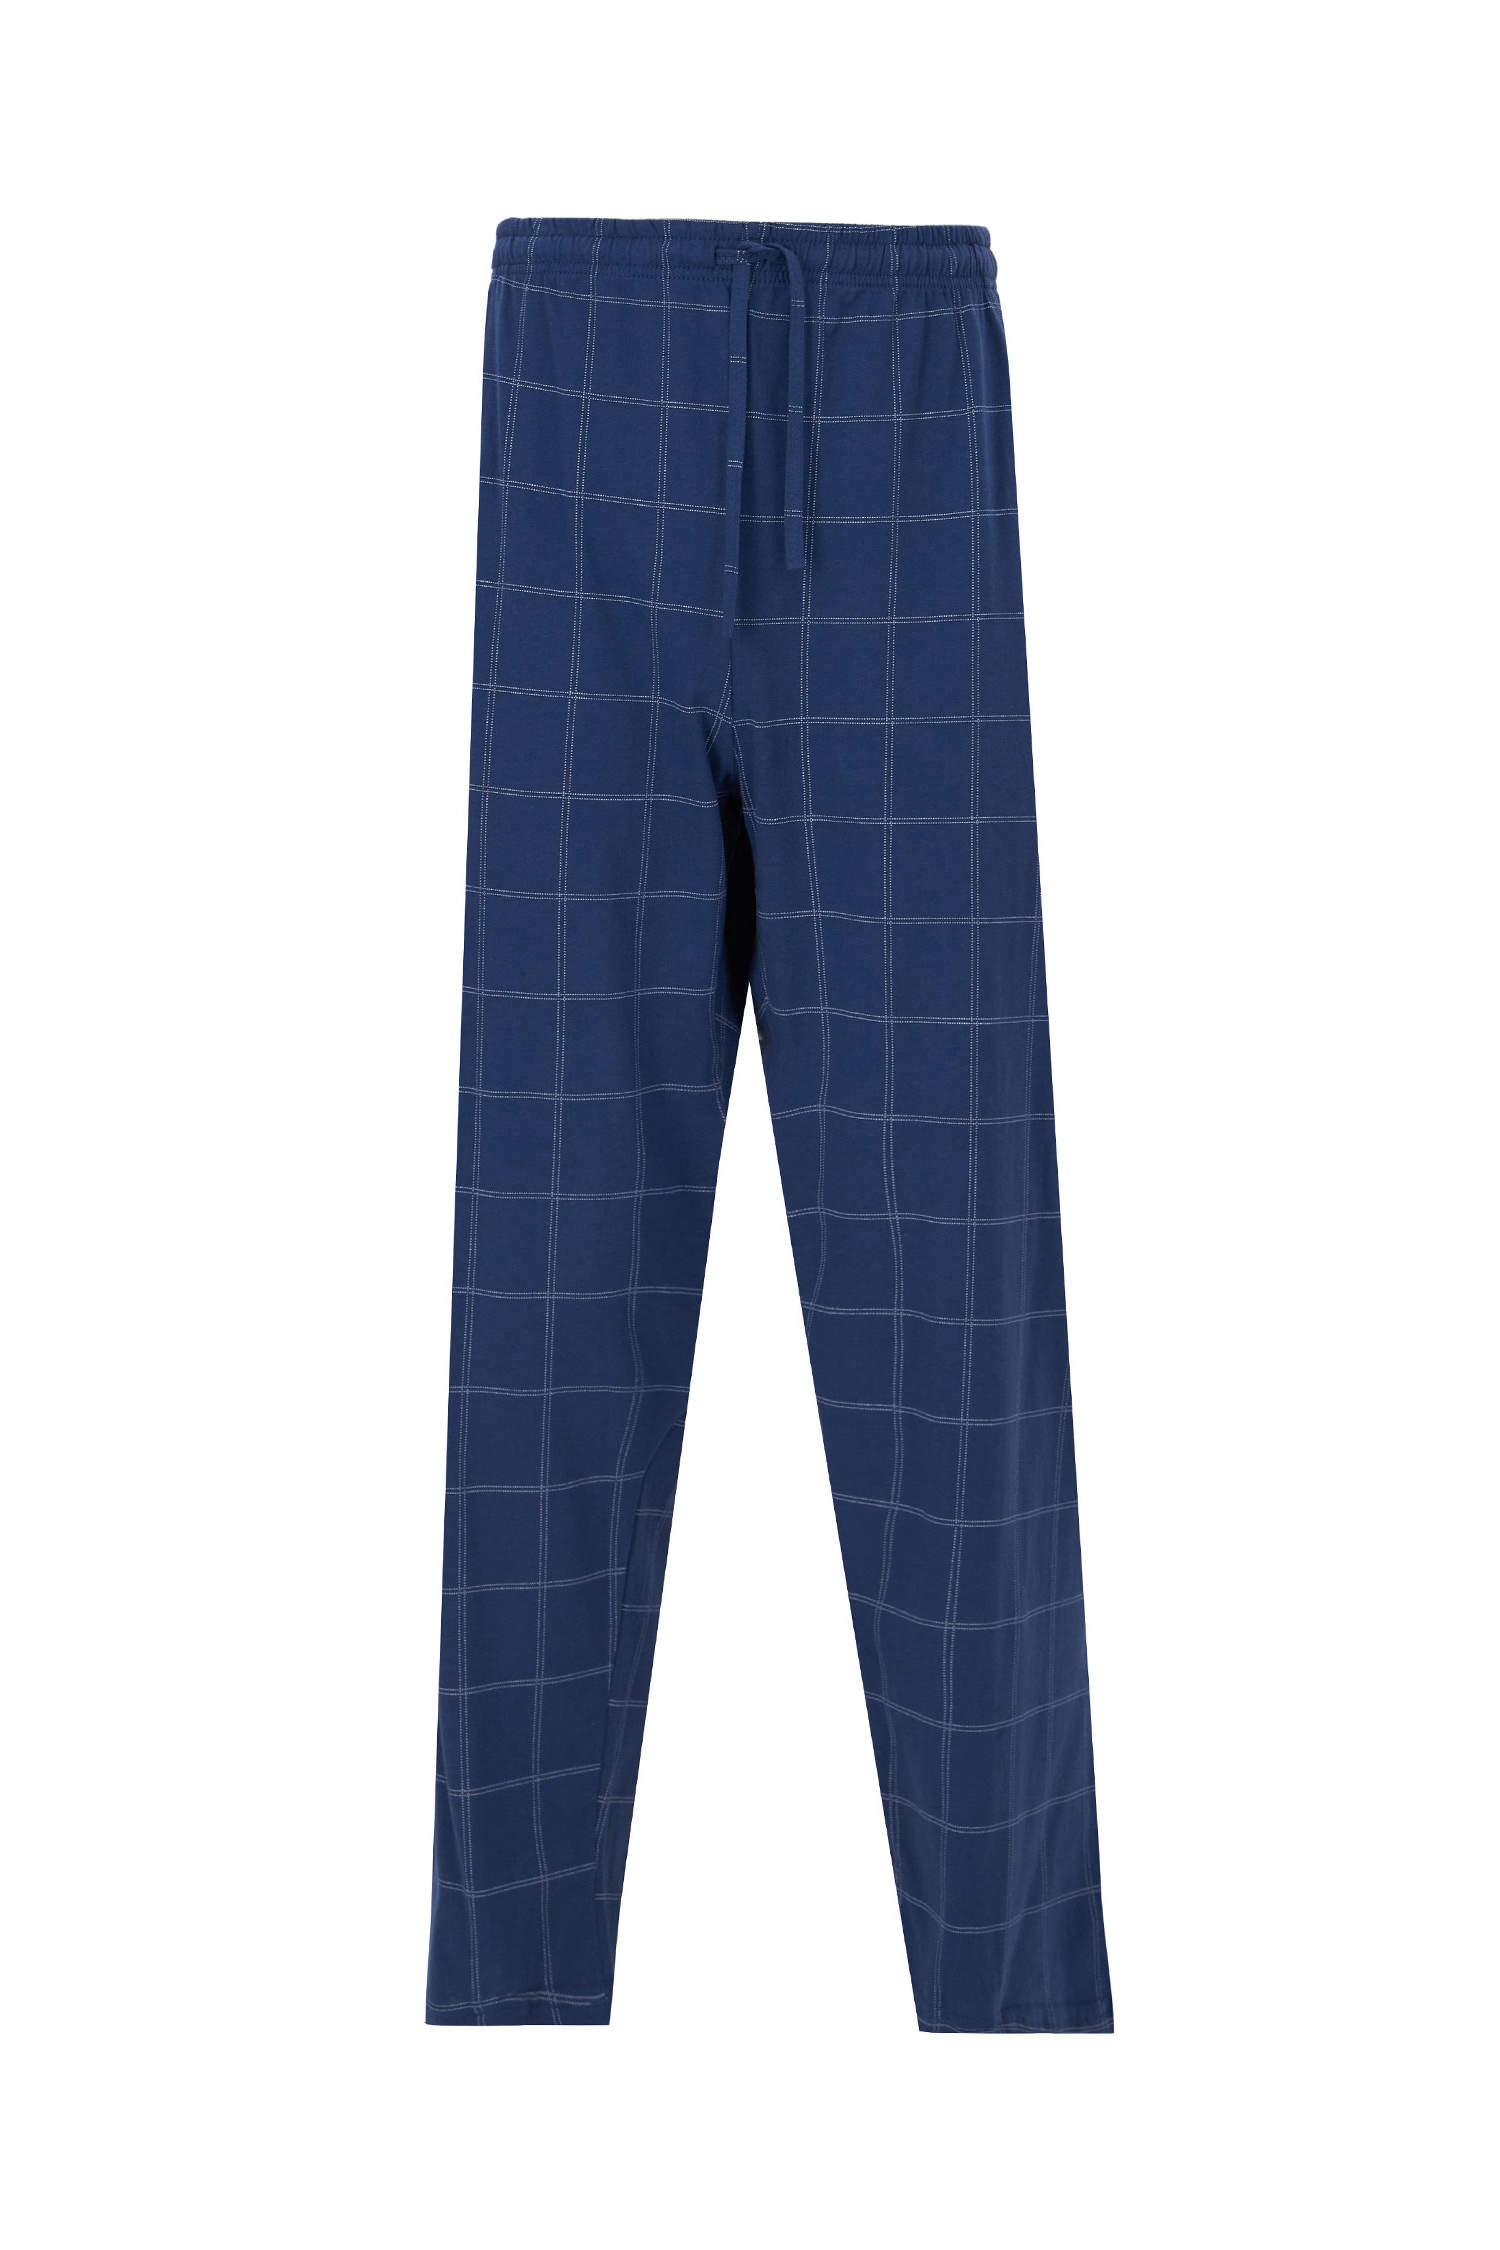 Defacto Regular Fit Baskılı Pijama Takımı. 3